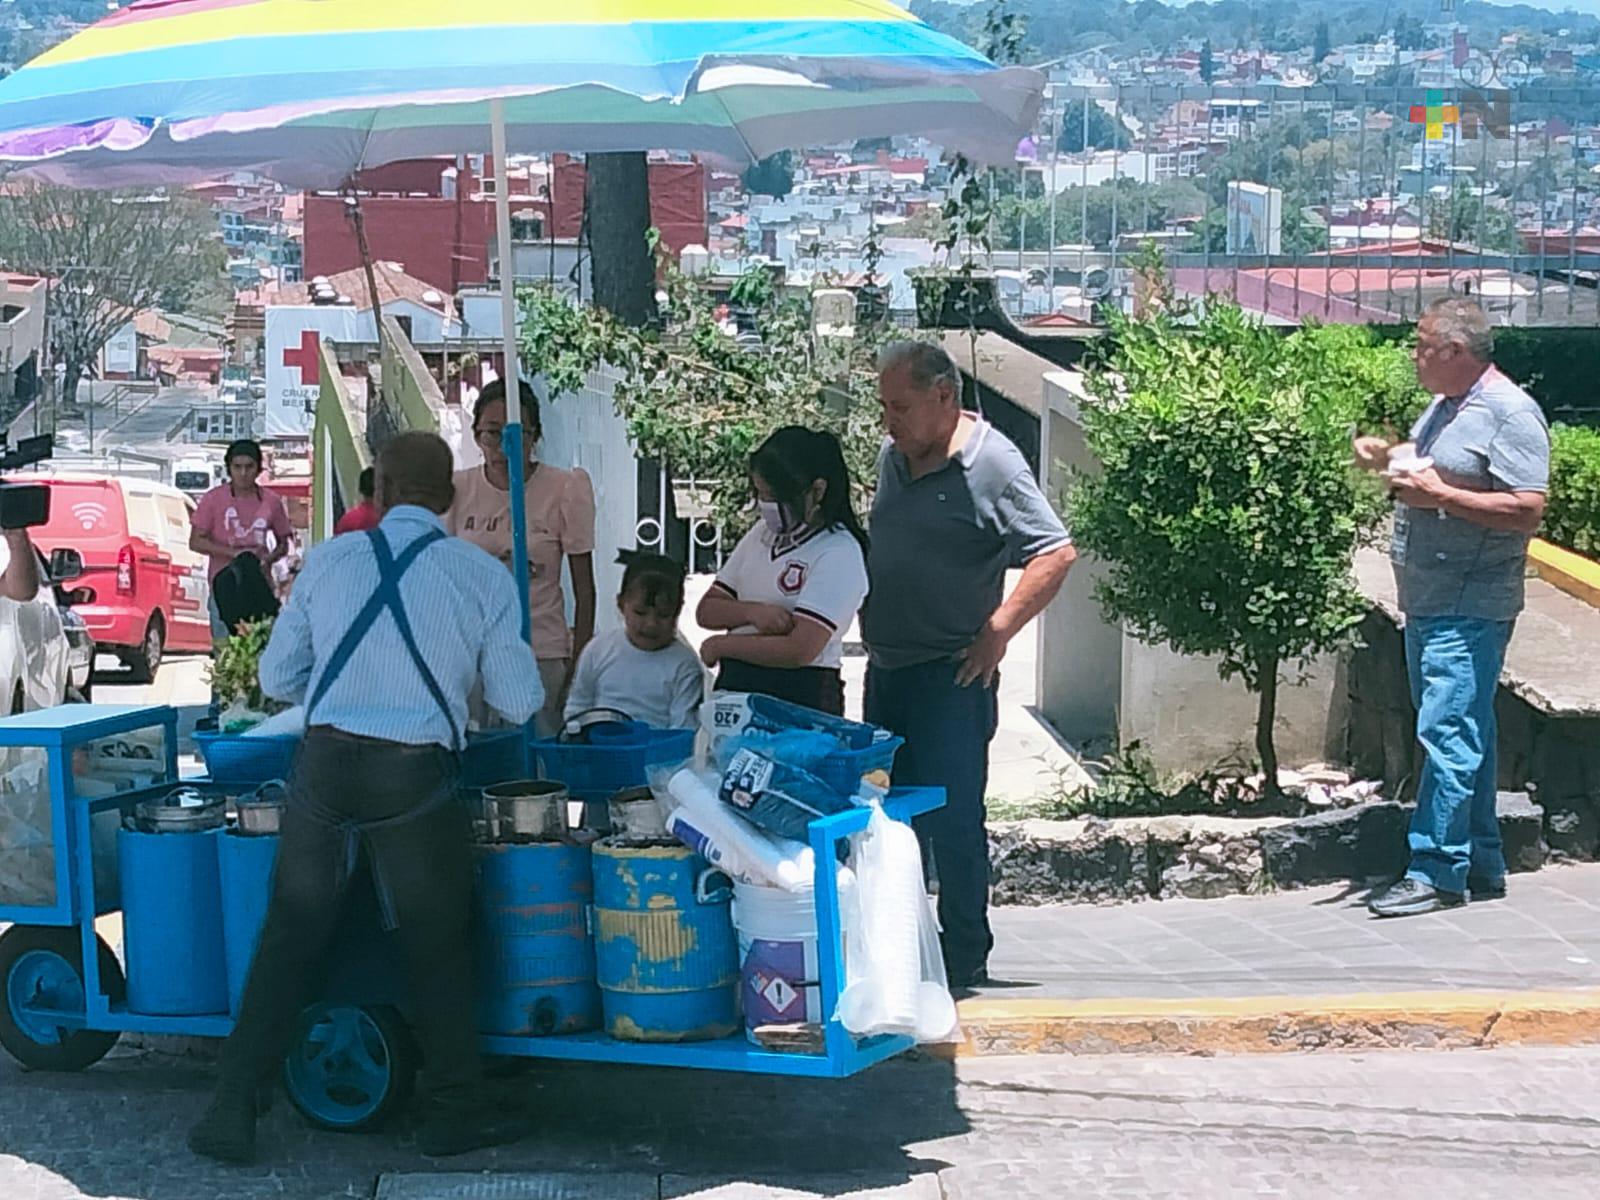 La ola de calor ha favorecido a quienes venden nieves en Xalapa